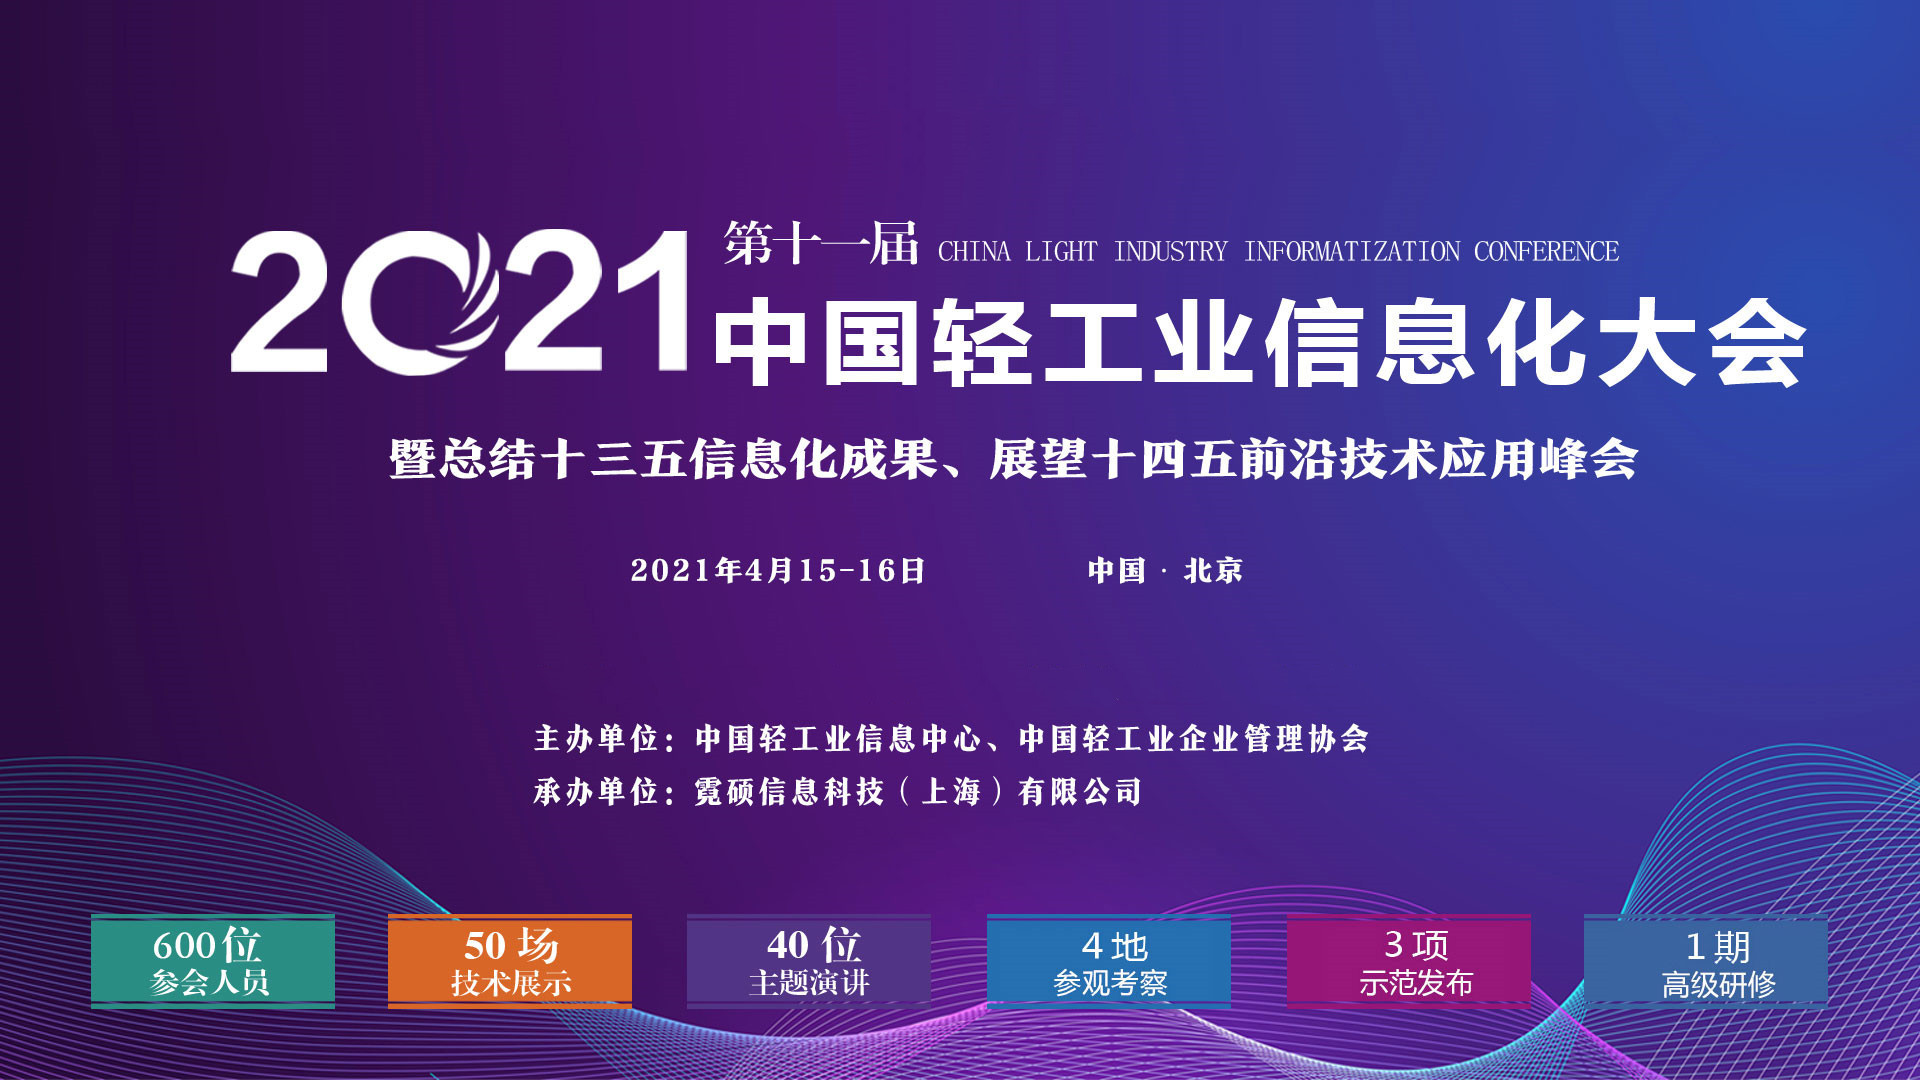 2021第十一屆中國輕工業信息化大會暨回顧十三五信息化成果、展示十四五前沿技術應用峰會